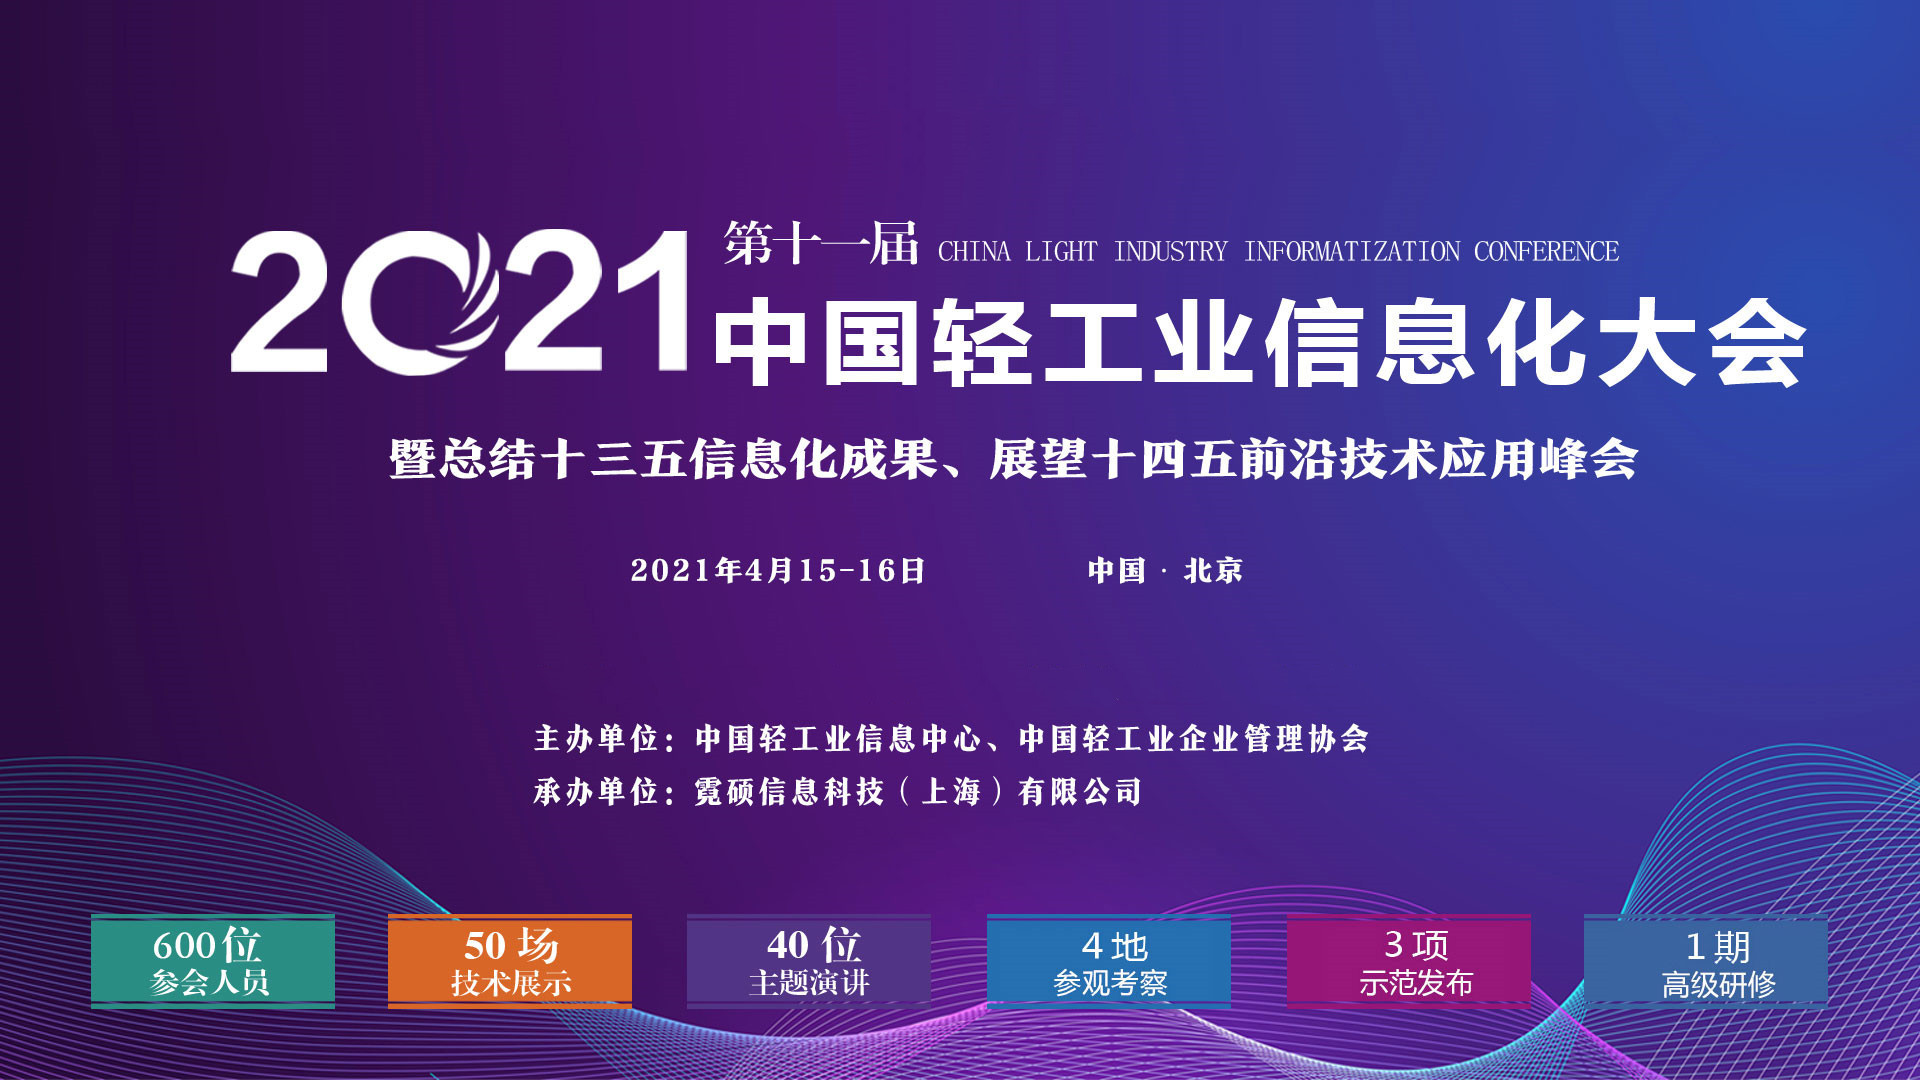 2021第十一屆中國輕工業信息化大會暨回顧十三五信息化成果、展示十四五前沿技術應用峰會